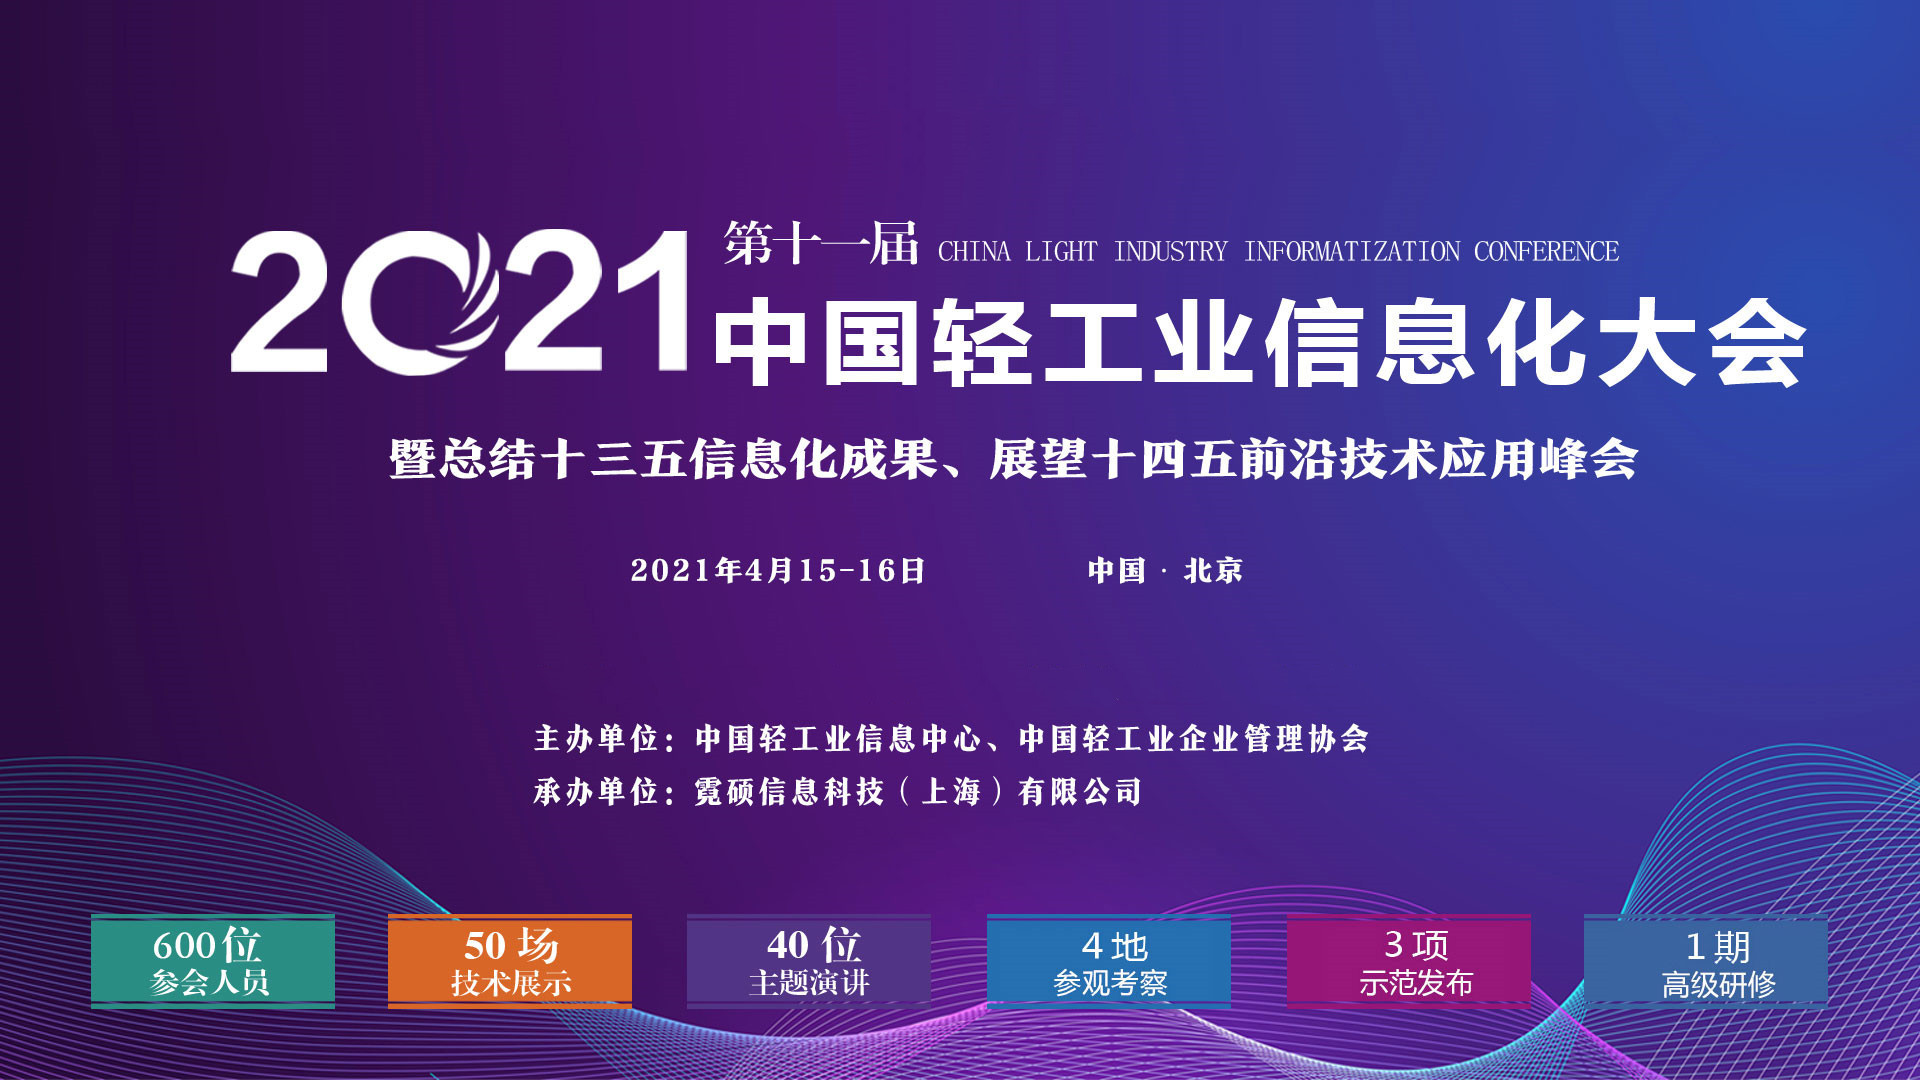 2021第十一屆中國輕工業信息化大會暨回顧十三五信息化成果、展示十四五前沿技術應用峰會